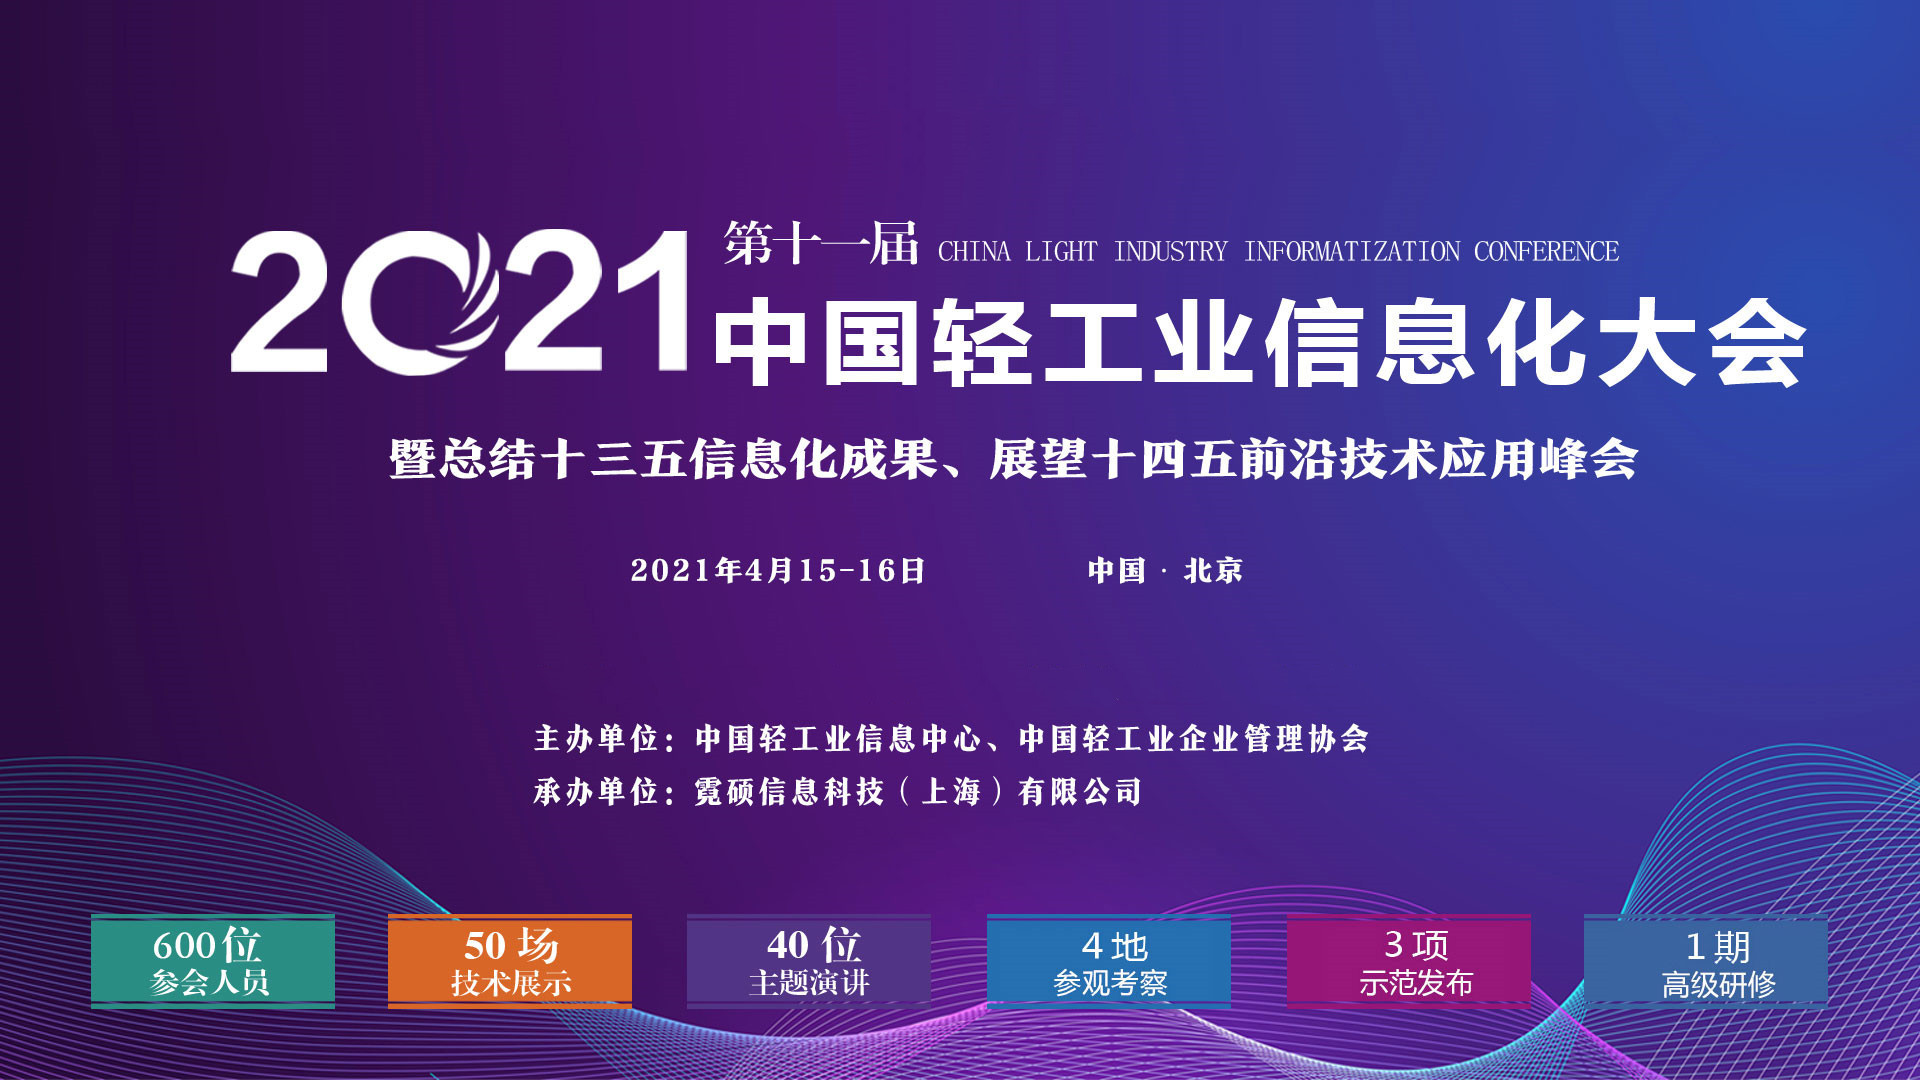 2021第十一屆中國輕工業信息化大會暨回顧十三五信息化成果、展示十四五前沿技術應用峰會